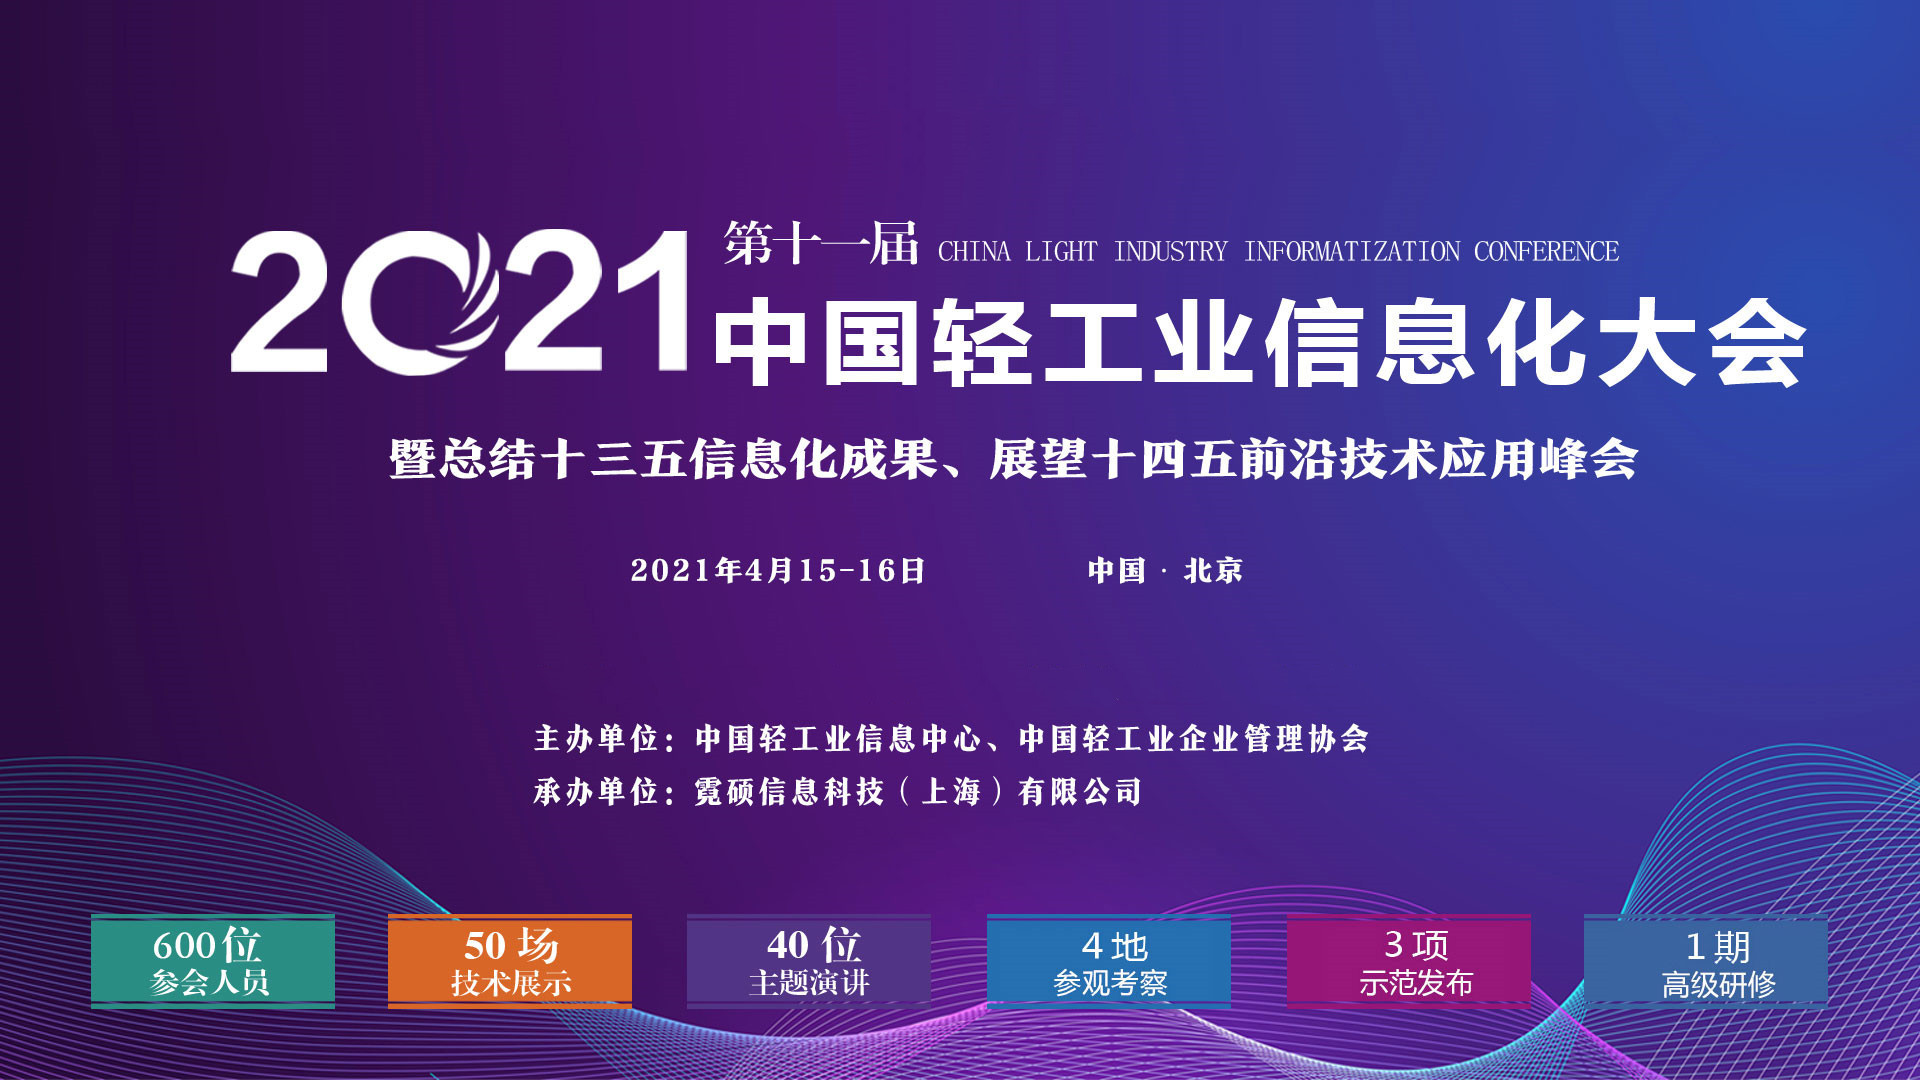 2021第十一屆中國輕工業信息化大會暨回顧十三五信息化成果、展示十四五前沿技術應用峰會